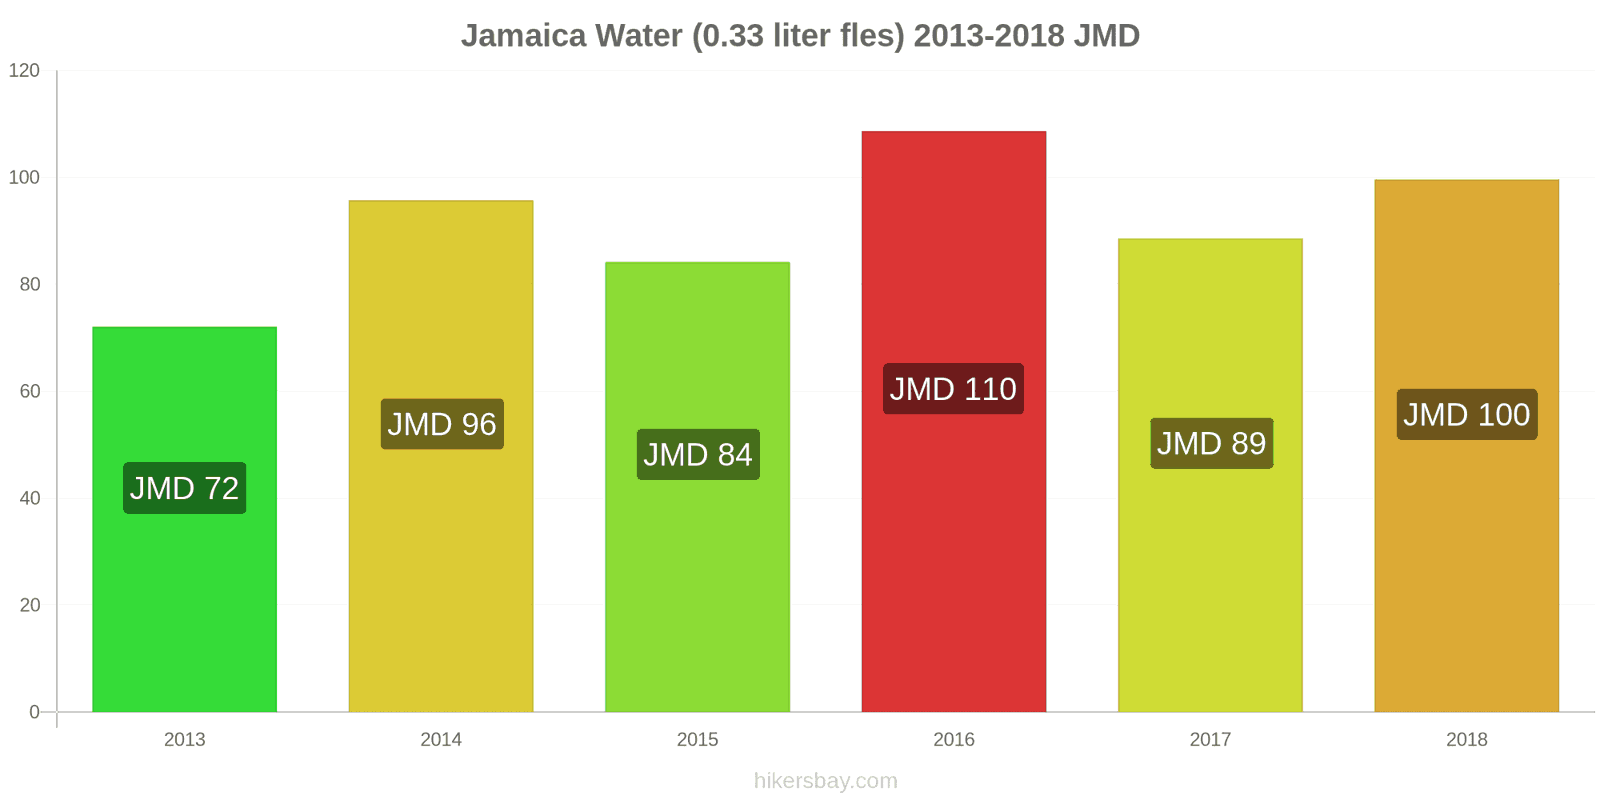 Jamaica prijswijzigingen Water (0.33 liter fles) hikersbay.com